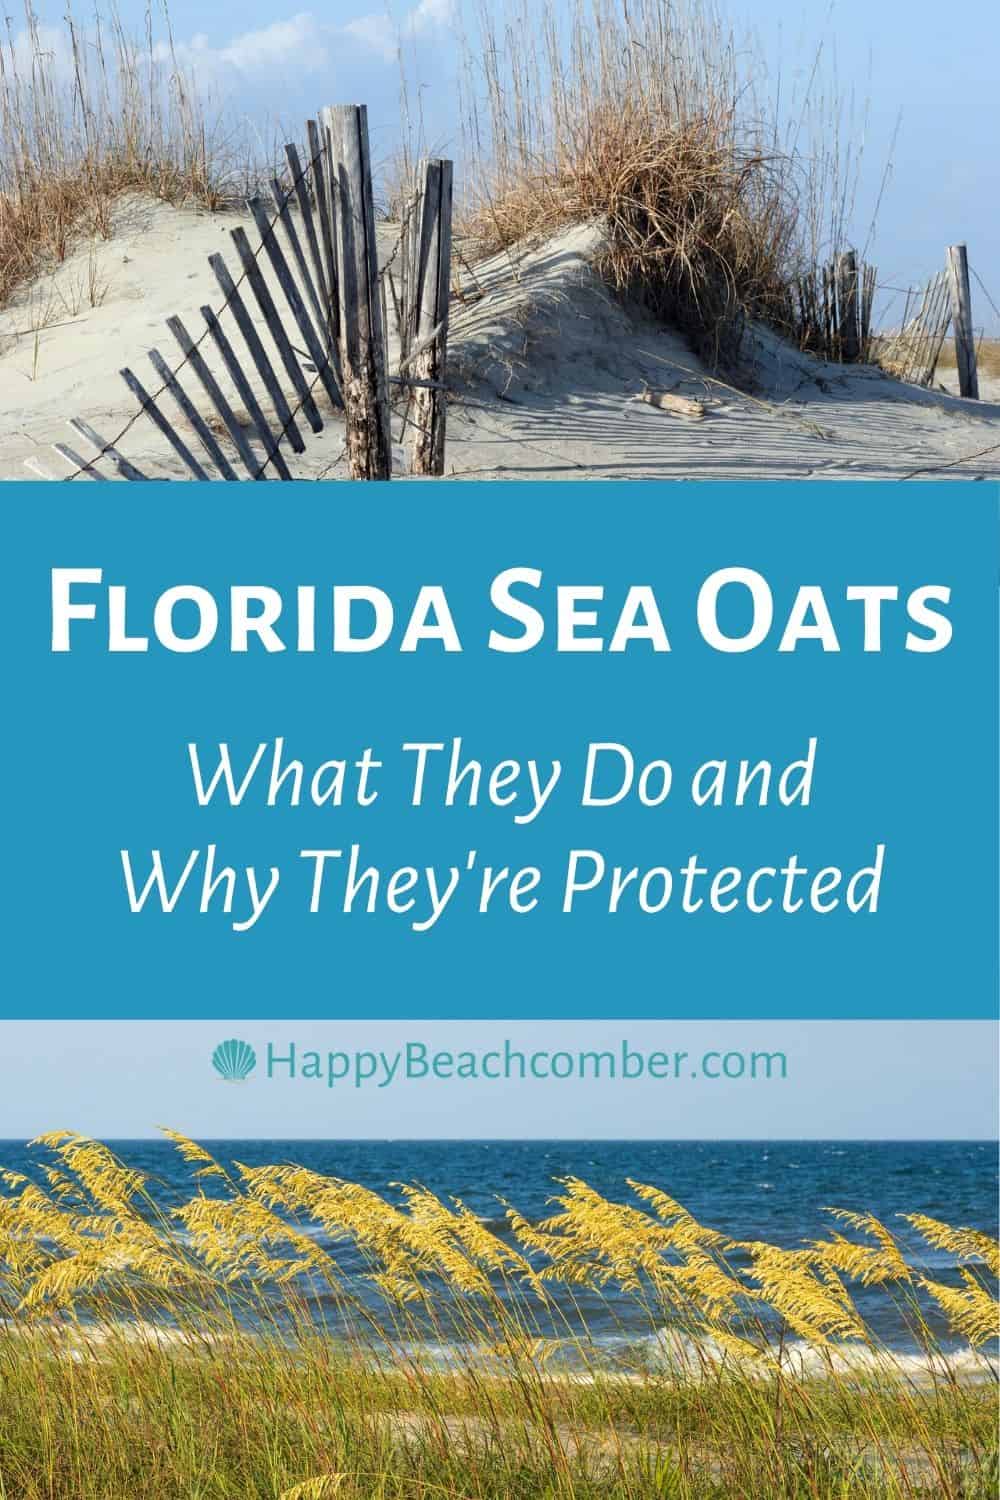 Florida Sea Oats